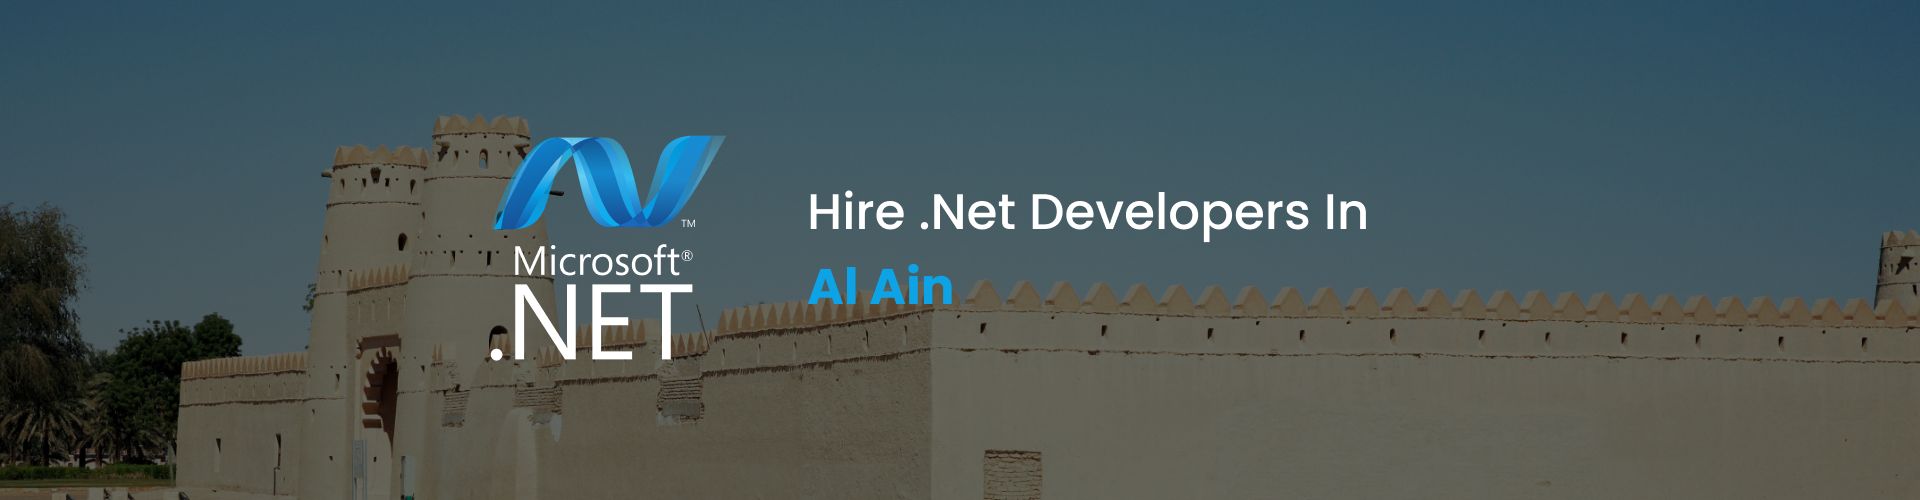 hire .net developers in al ain